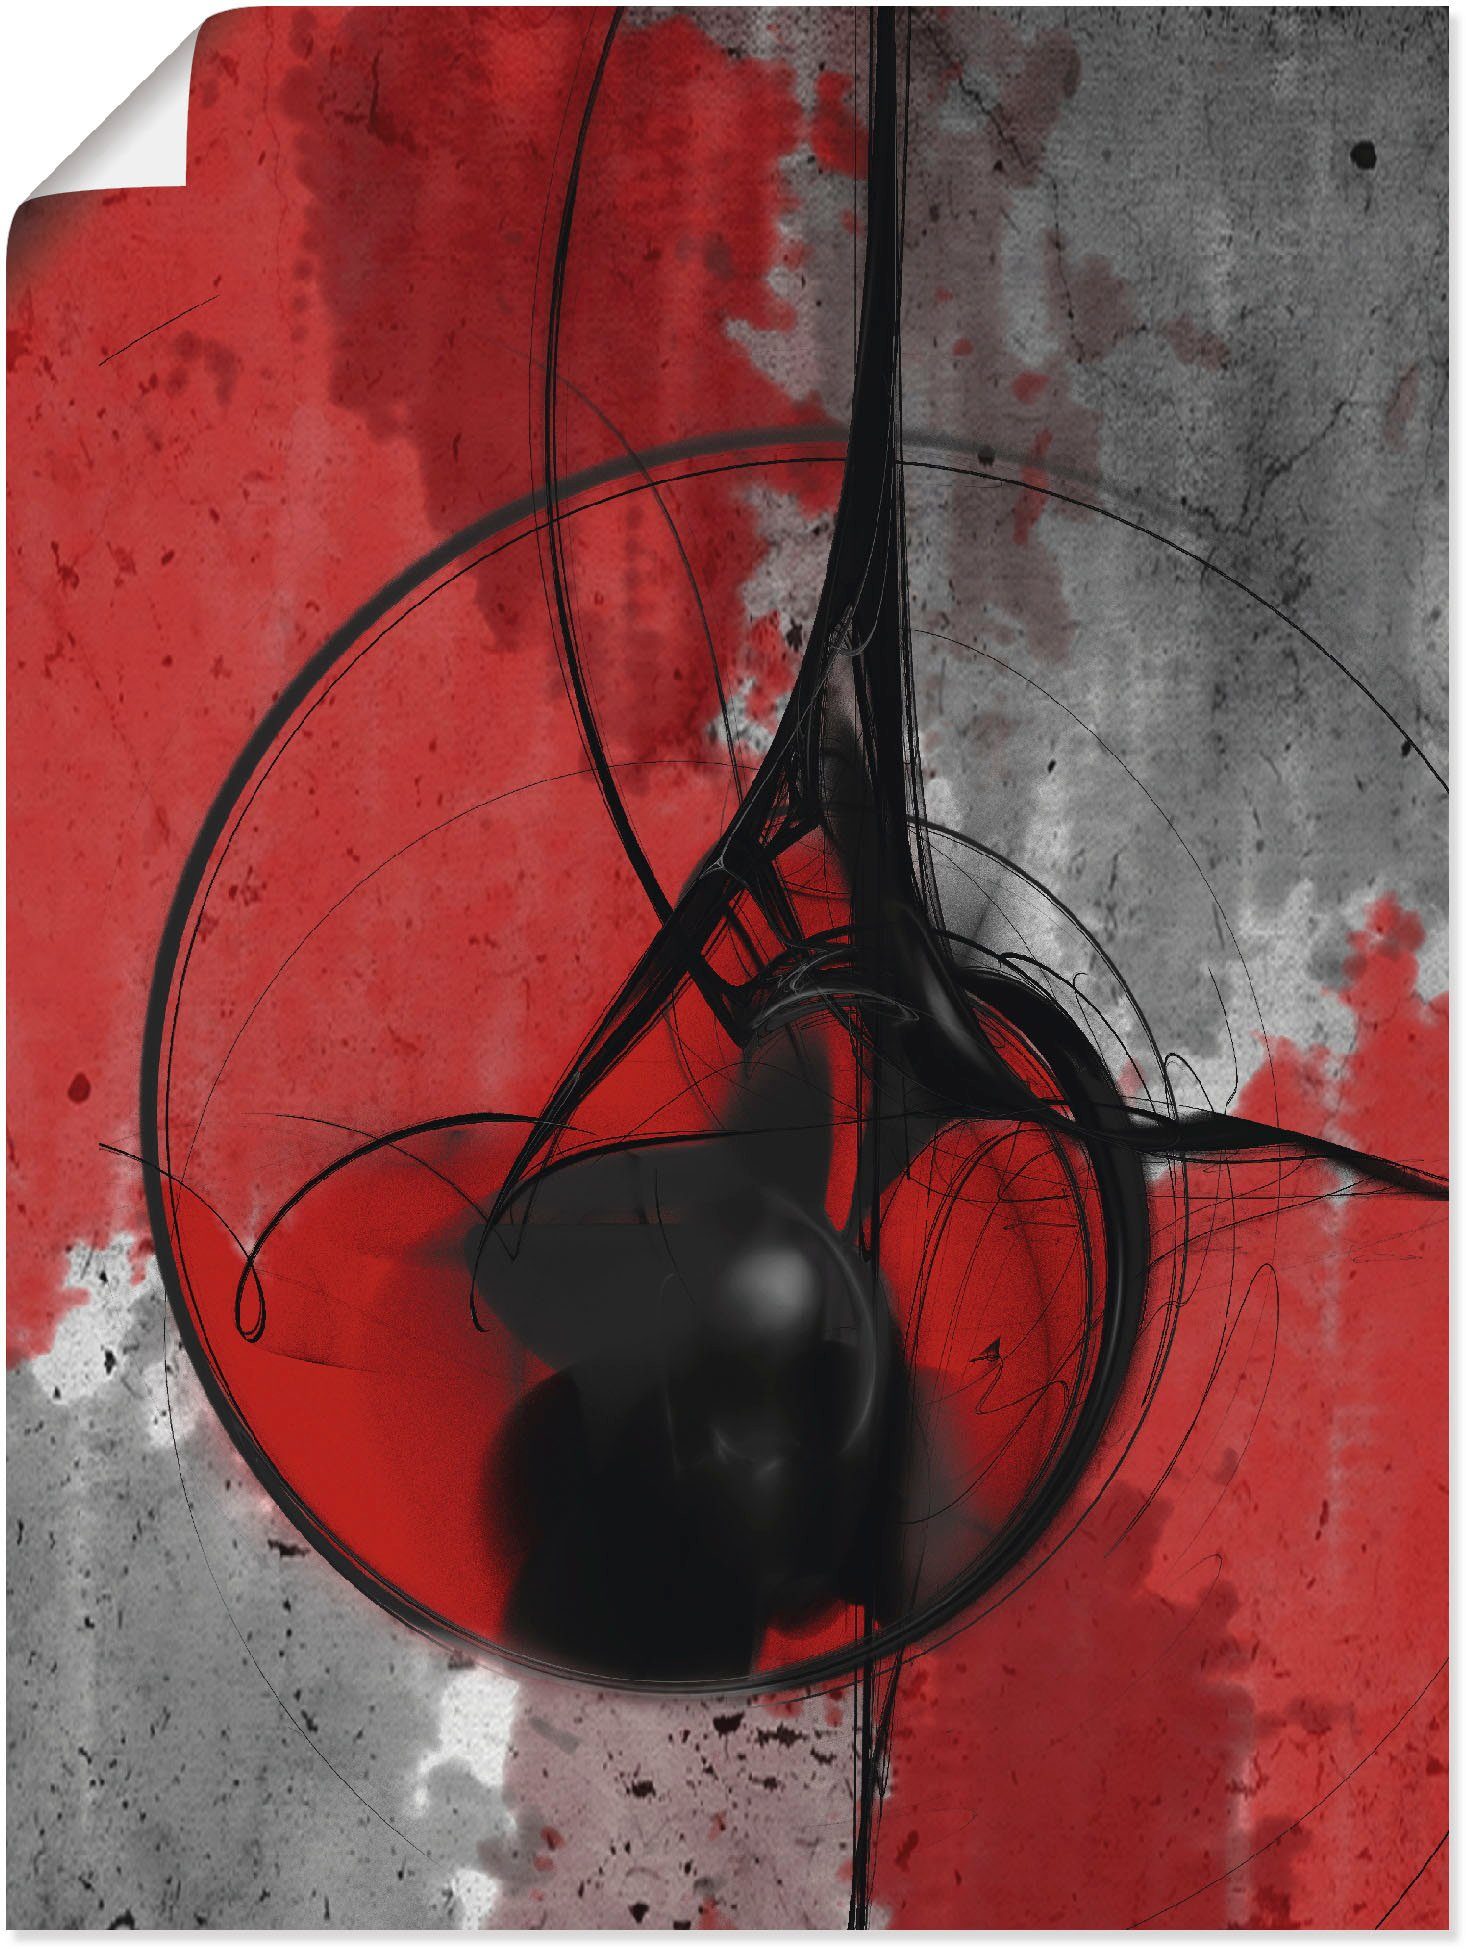 Artland Artprint Abstract in rood en zwart in vele afmetingen & productsoorten - artprint van aluminium / artprint voor buiten, artprint op linnen, poster, muursticker / wandfolie